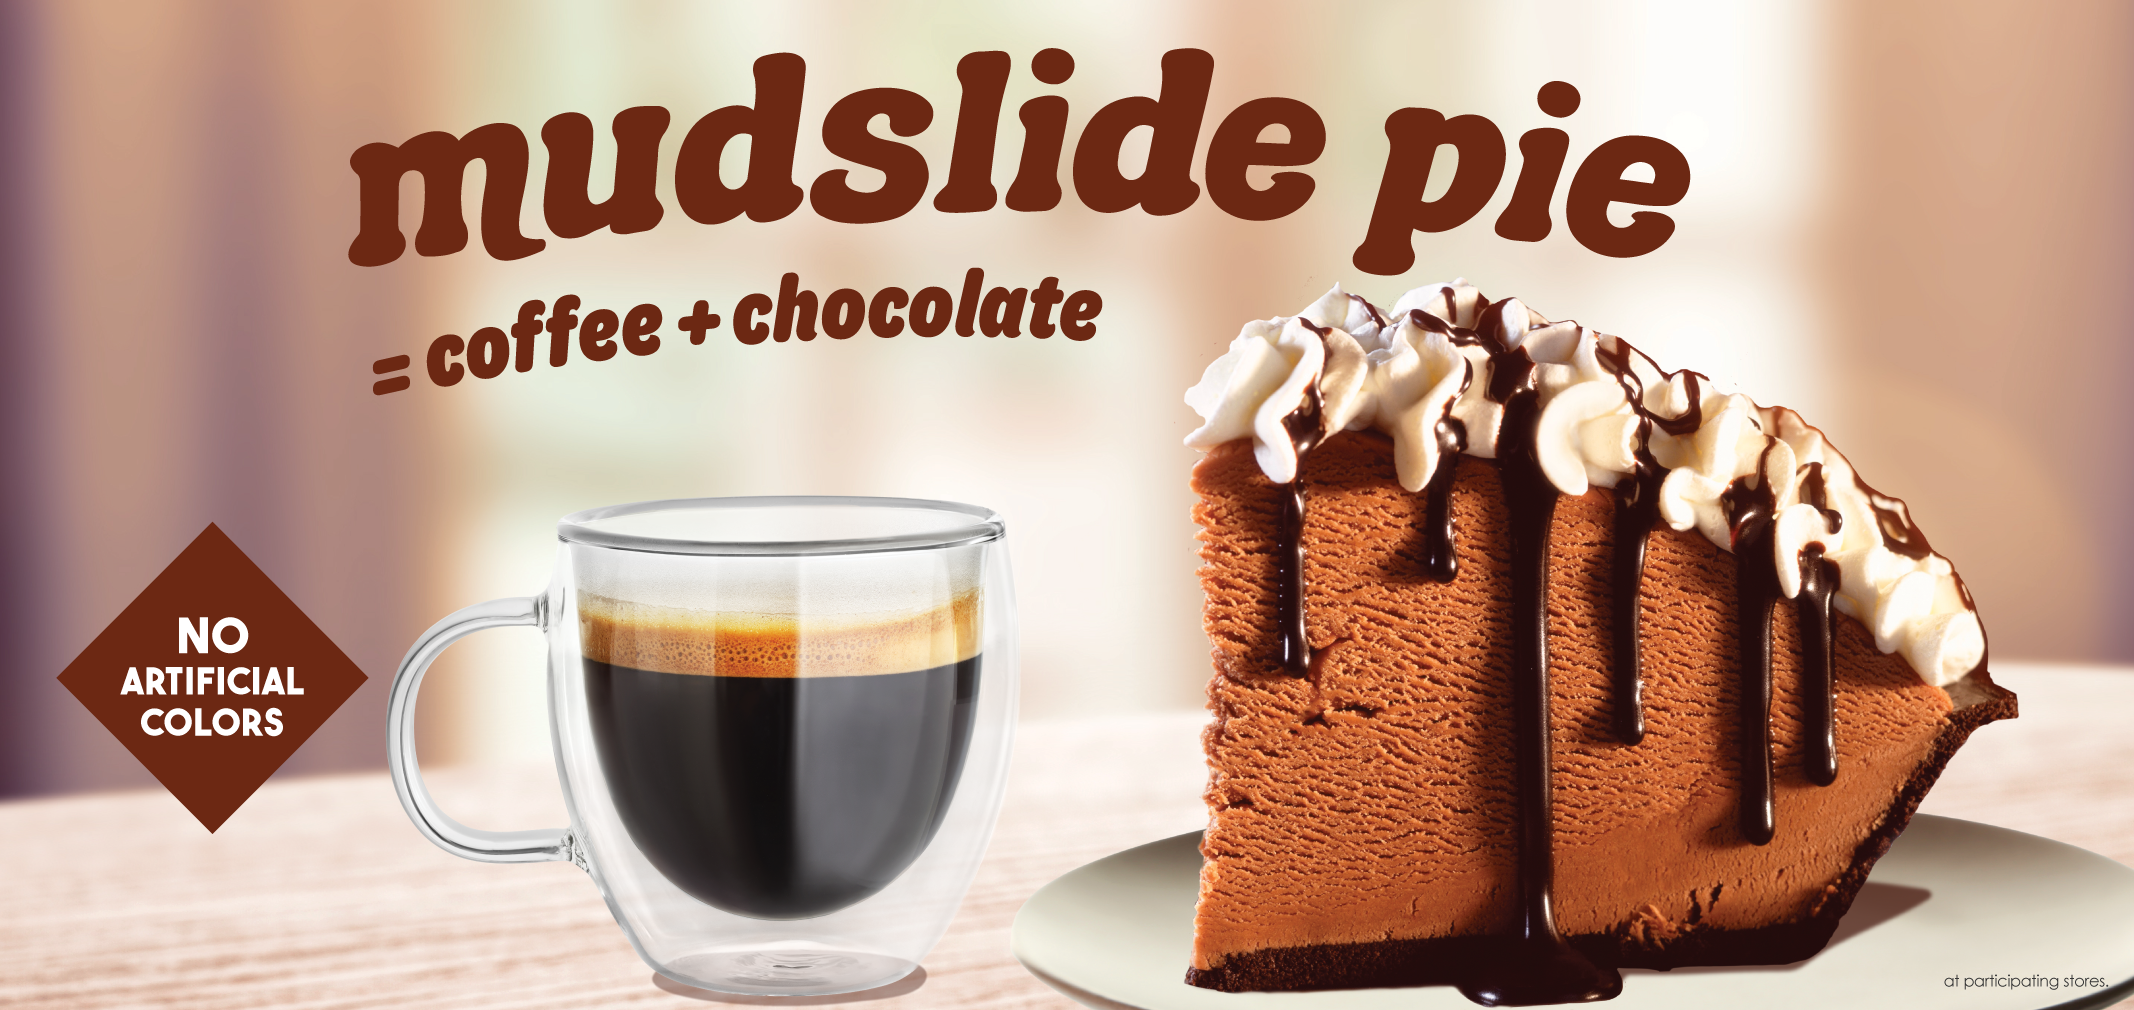 mudslide pie label image